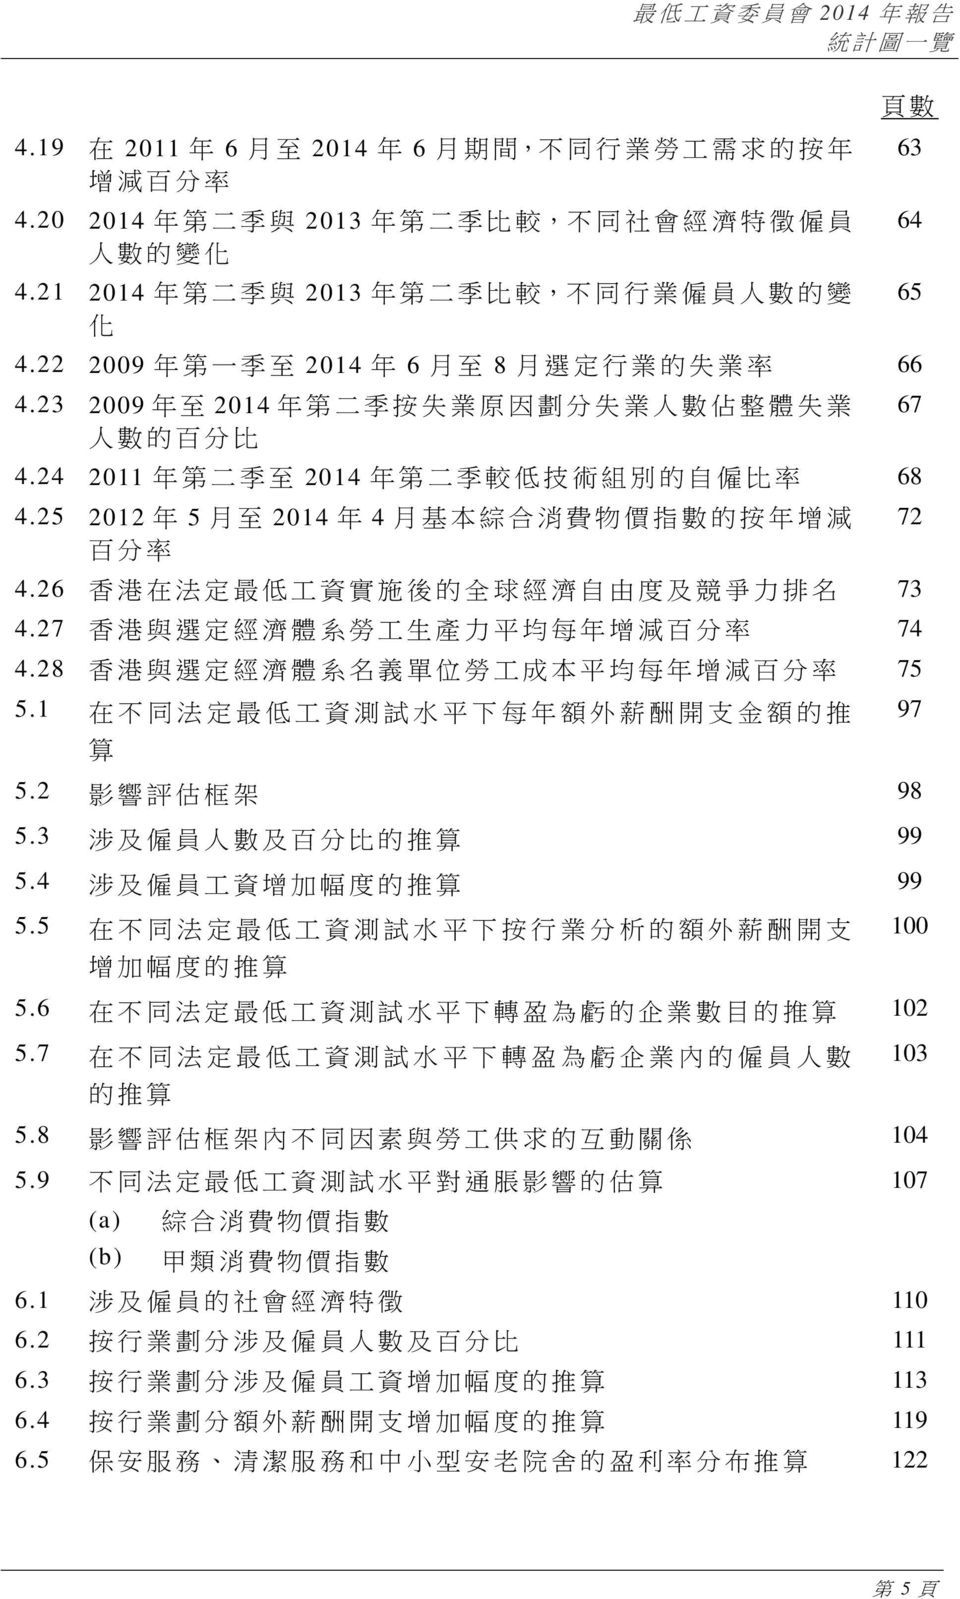 24 2011 年 第 二 季 至 2014 年 第 二 季 較 低 技 術 組 別 的 自 僱 比 率 68 4.25 2012 年 5 月 至 2014 年 4 月 基 本 綜 合 消 費 物 價 指 數 的 按 年 增 減 百 分 率 4.26 香 港 在 法 定 最 低 工 資 實 施 後 的 全 球 經 濟 自 由 度 及 競 爭 力 排 名 73 4.